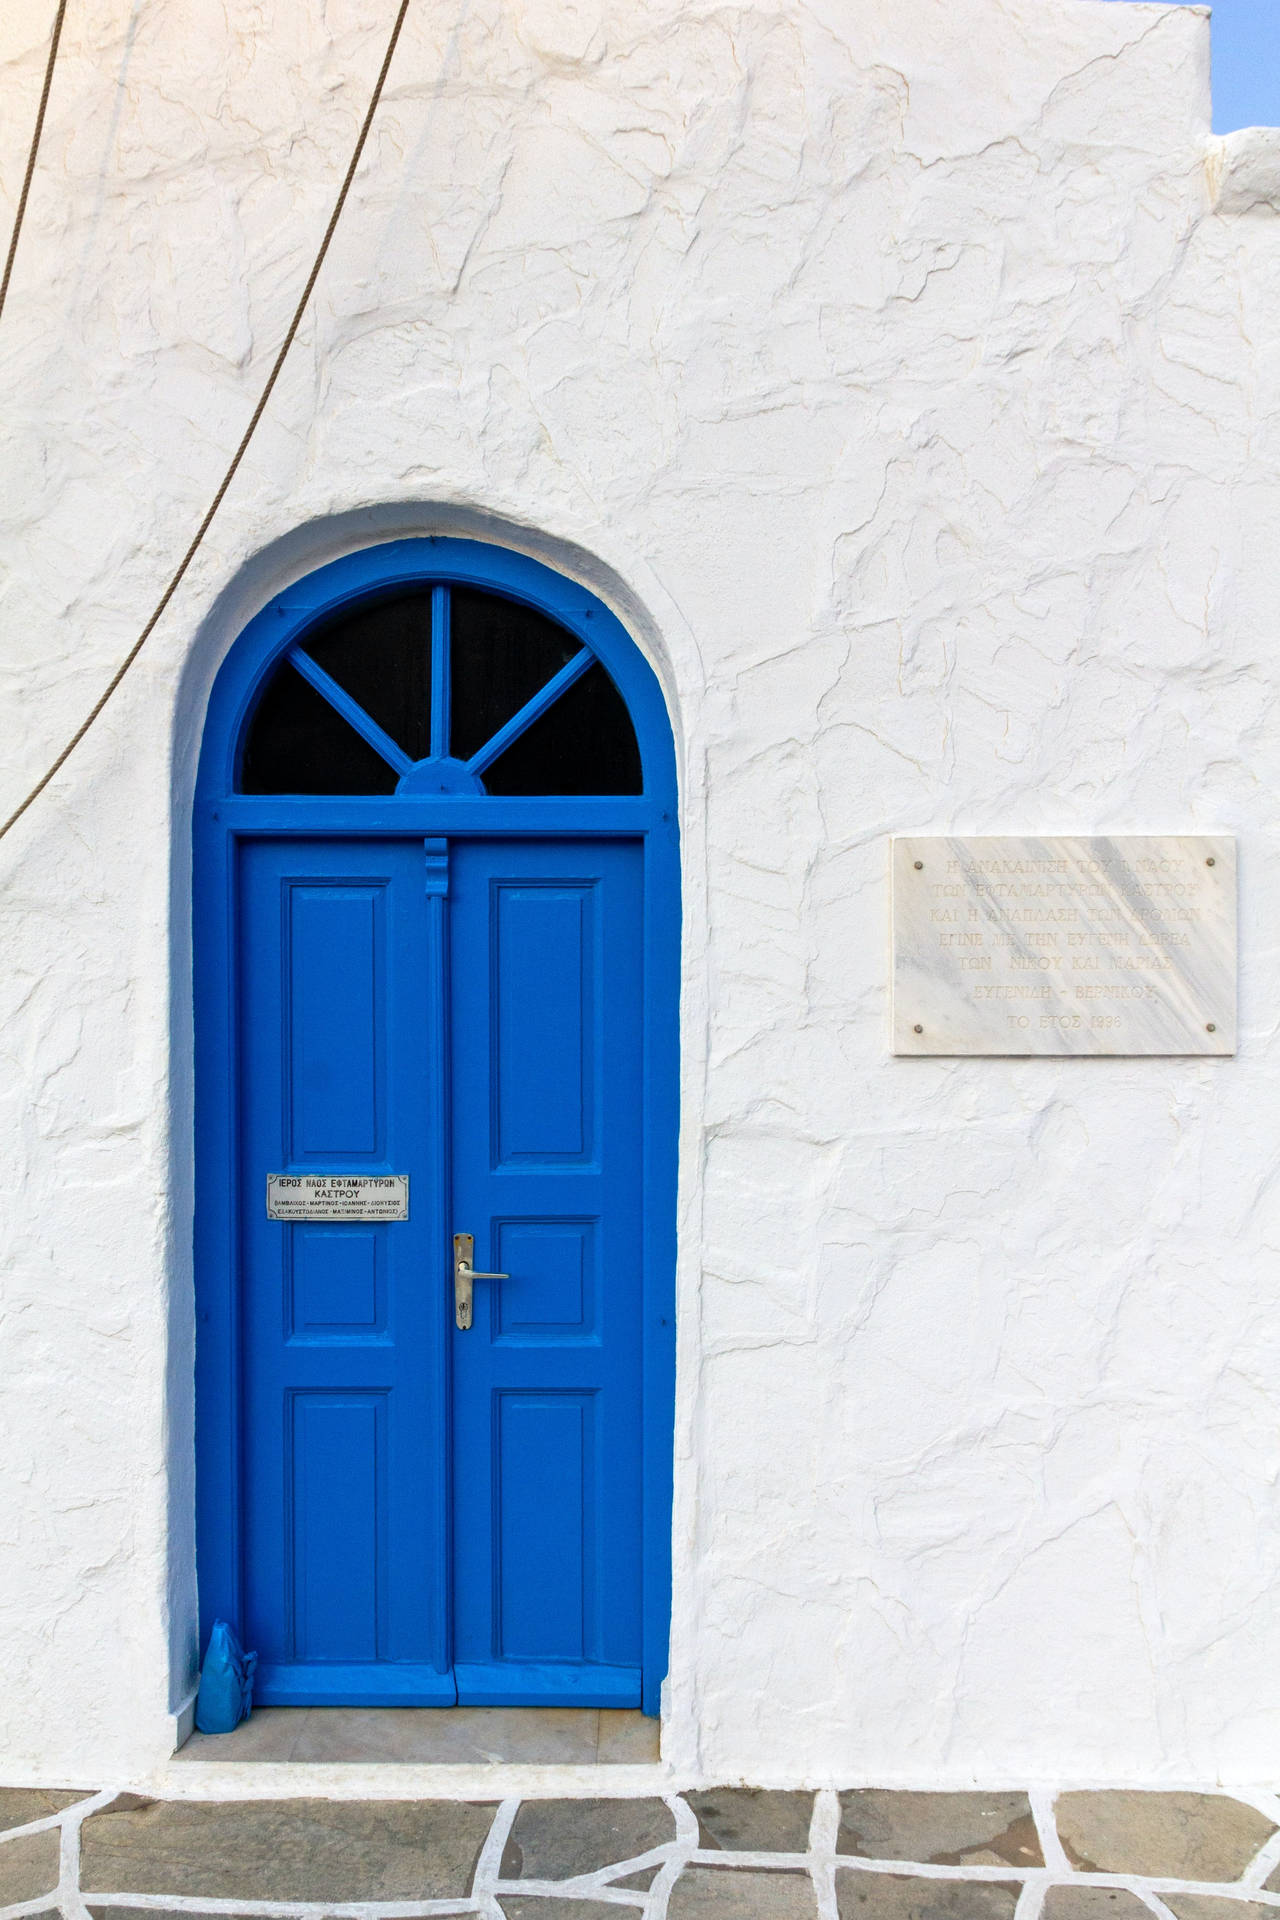 Antikadubbla Blå Dörrar I Grekland. Wallpaper